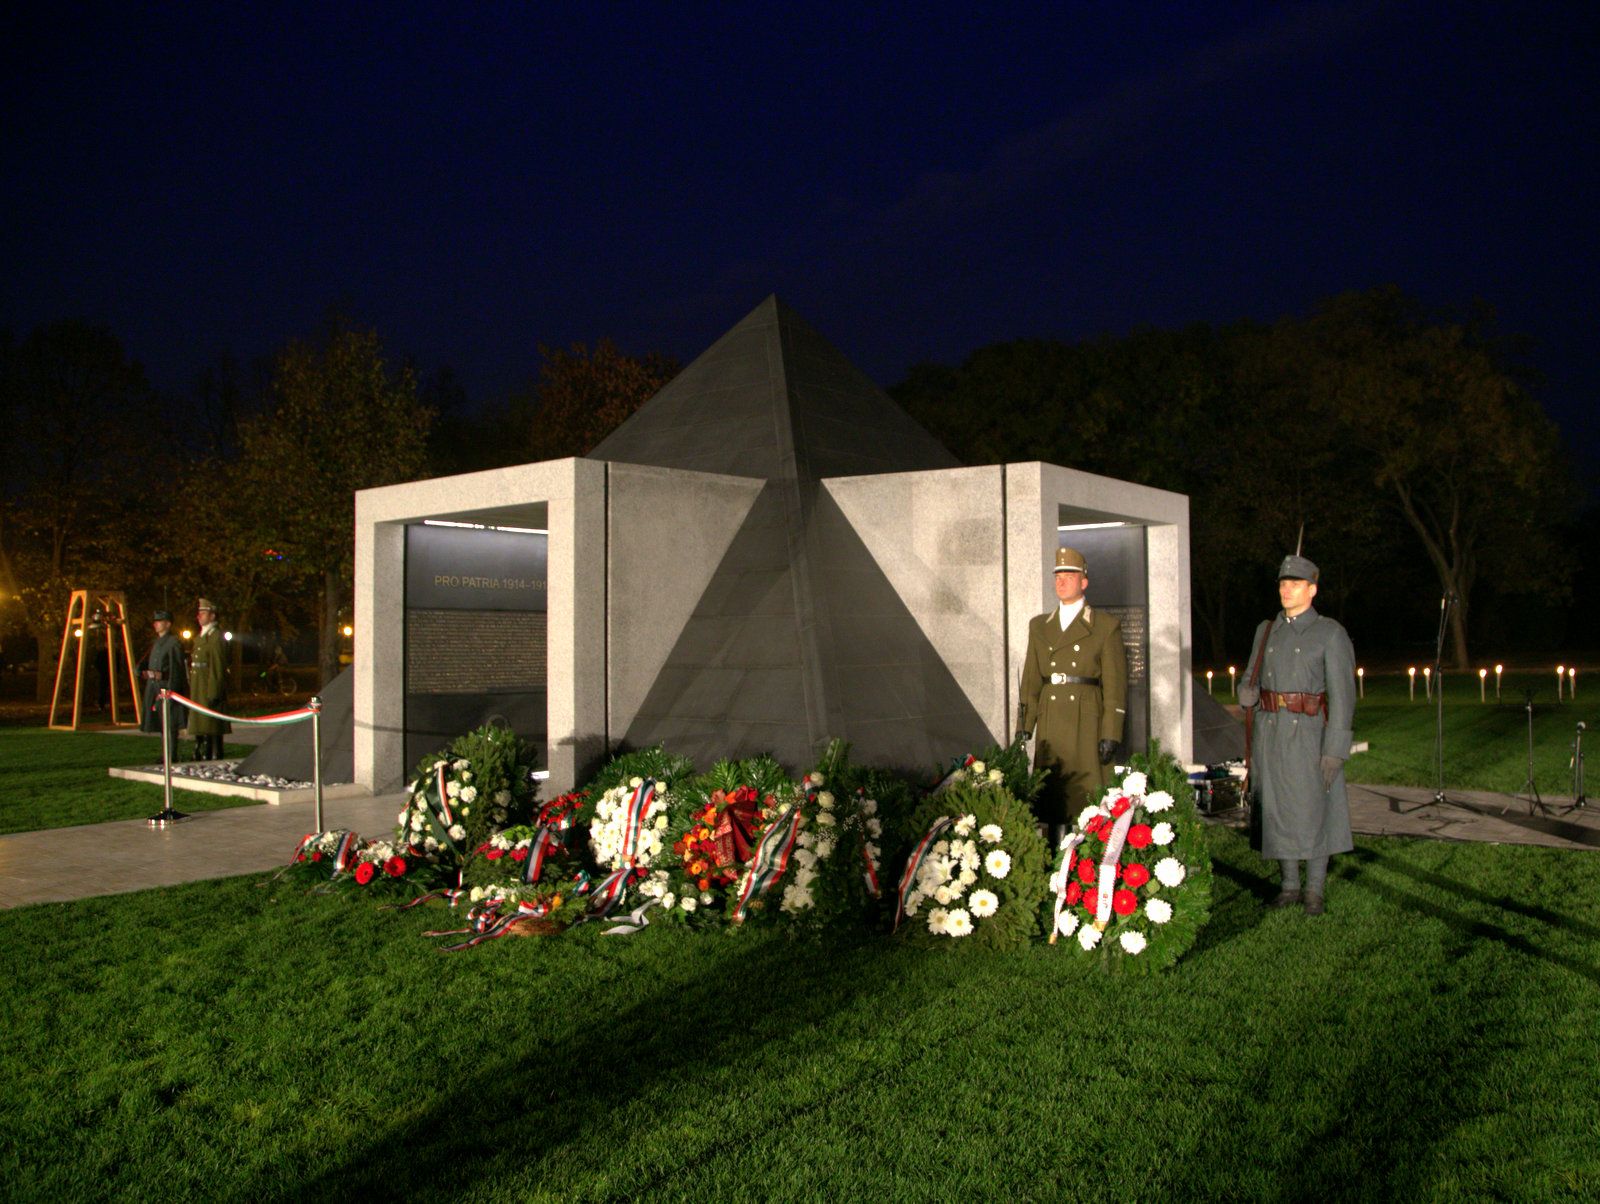 Felavatták az első világháború magyar hőseinek emlékművét